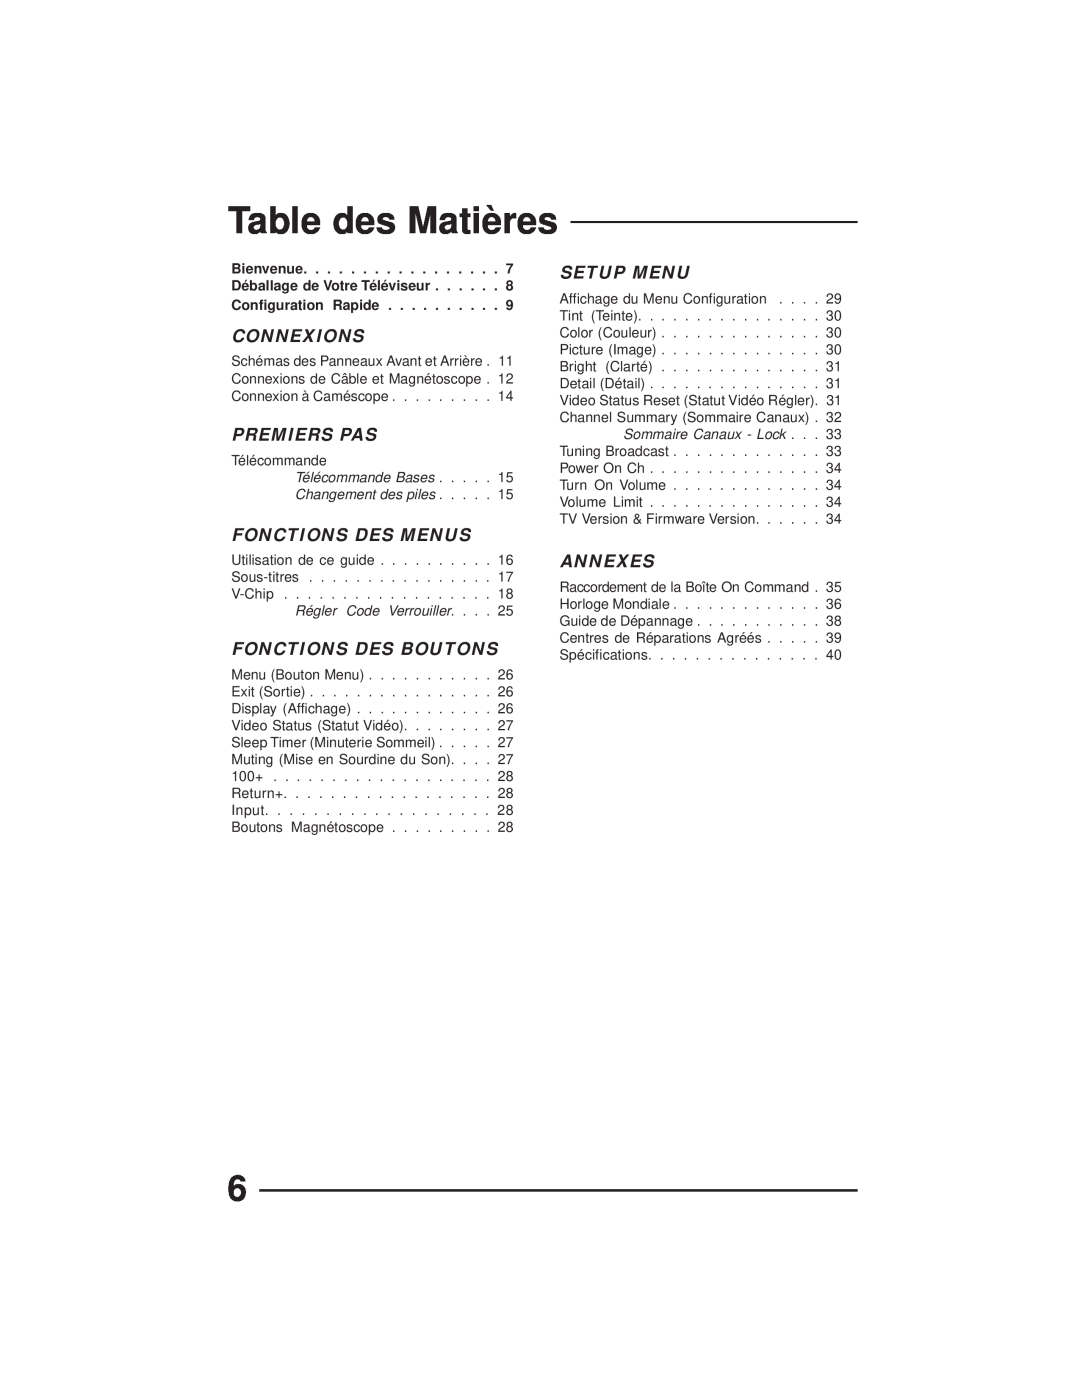 JVC AV-27GFH Table des Matières, Connexions, Premiers Pas, Fonctions Des Menus, Fonctions Des Boutons, Setup Menu, Annexes 